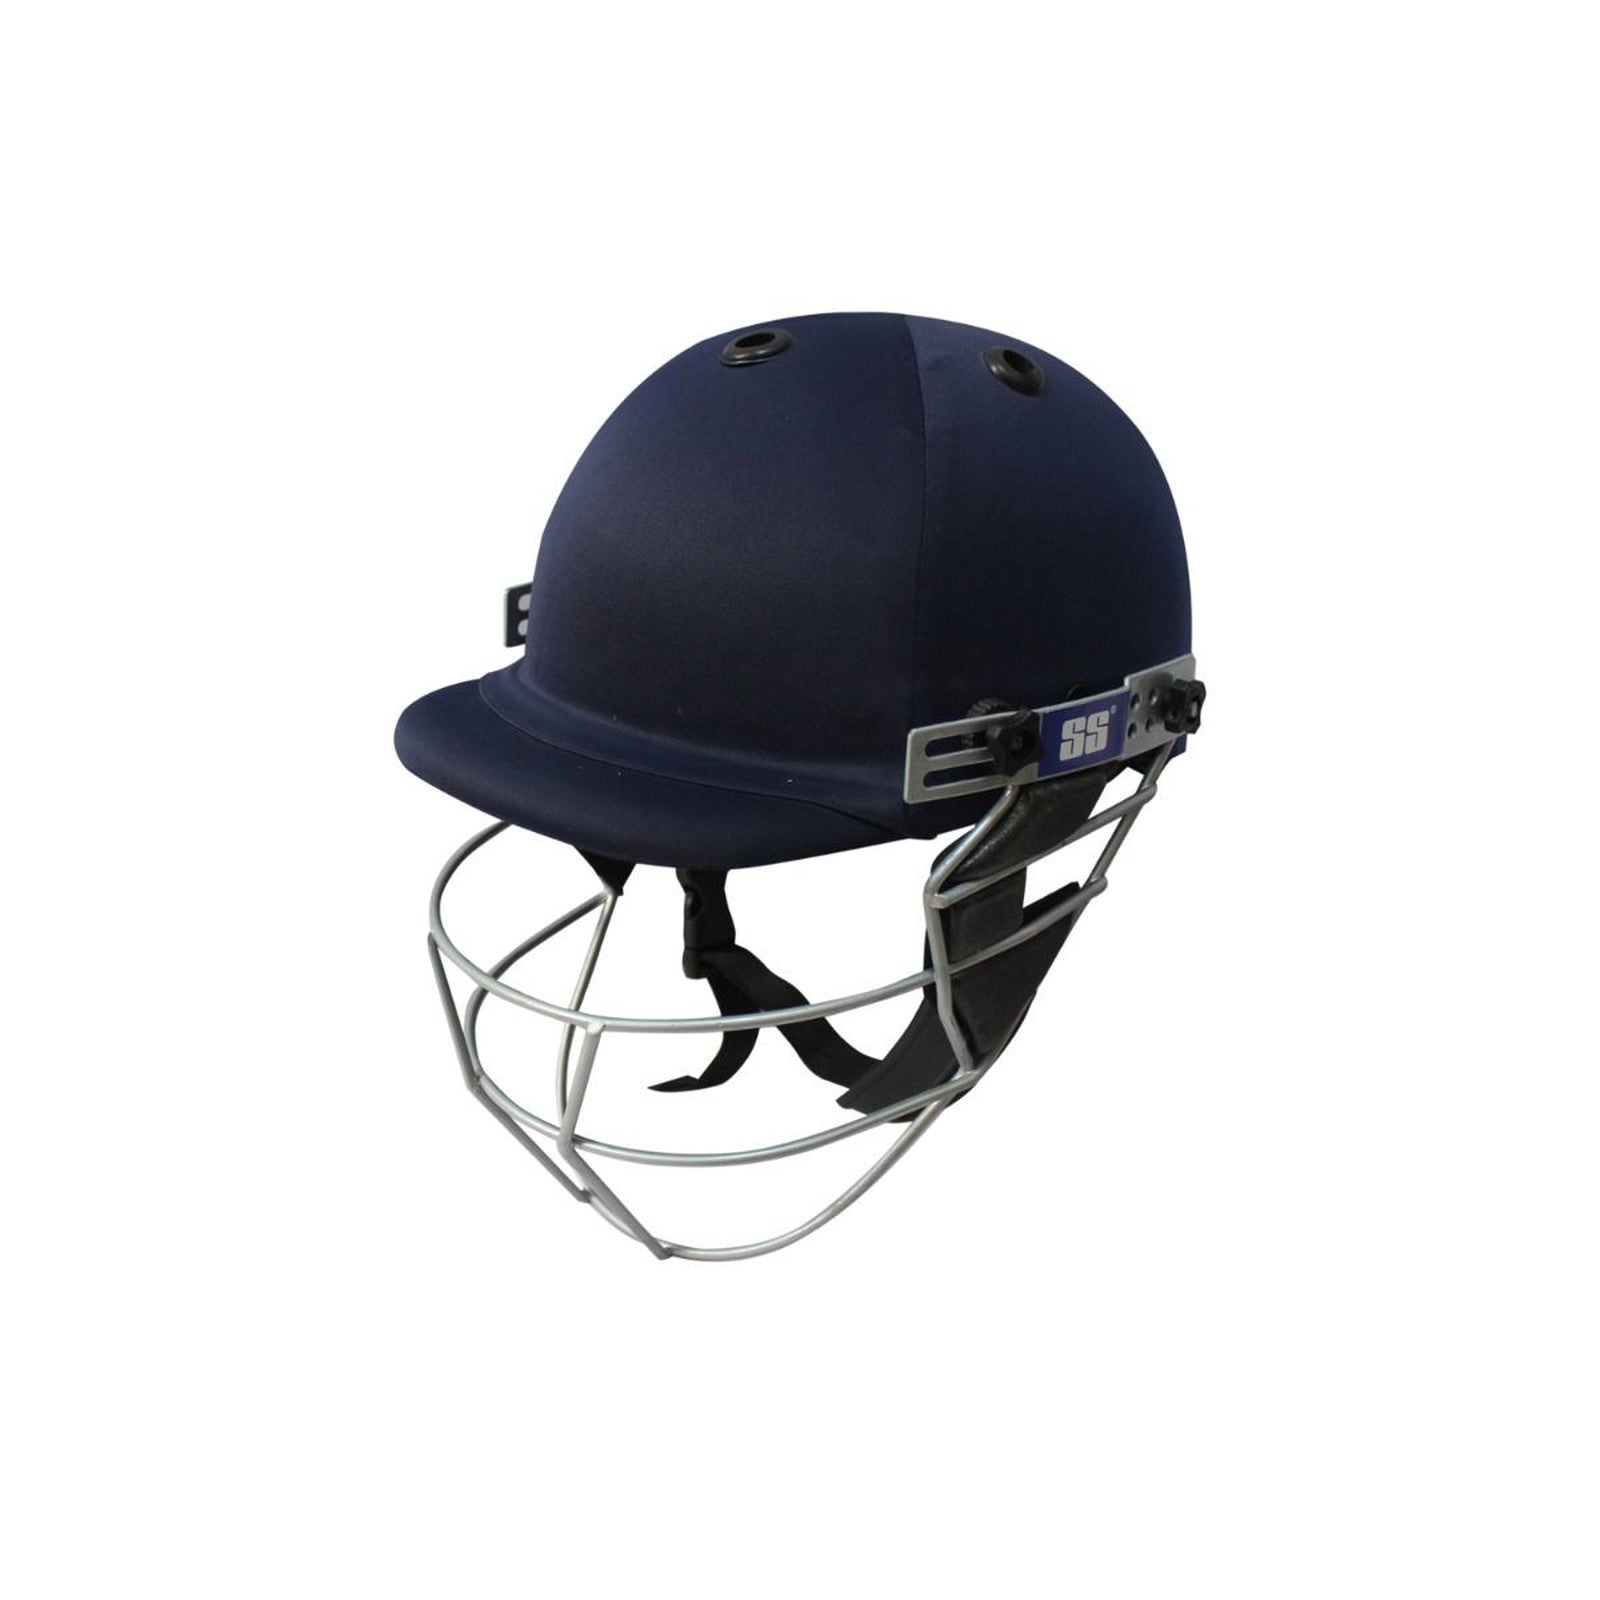 SS Super Cricket Helmet - Senior